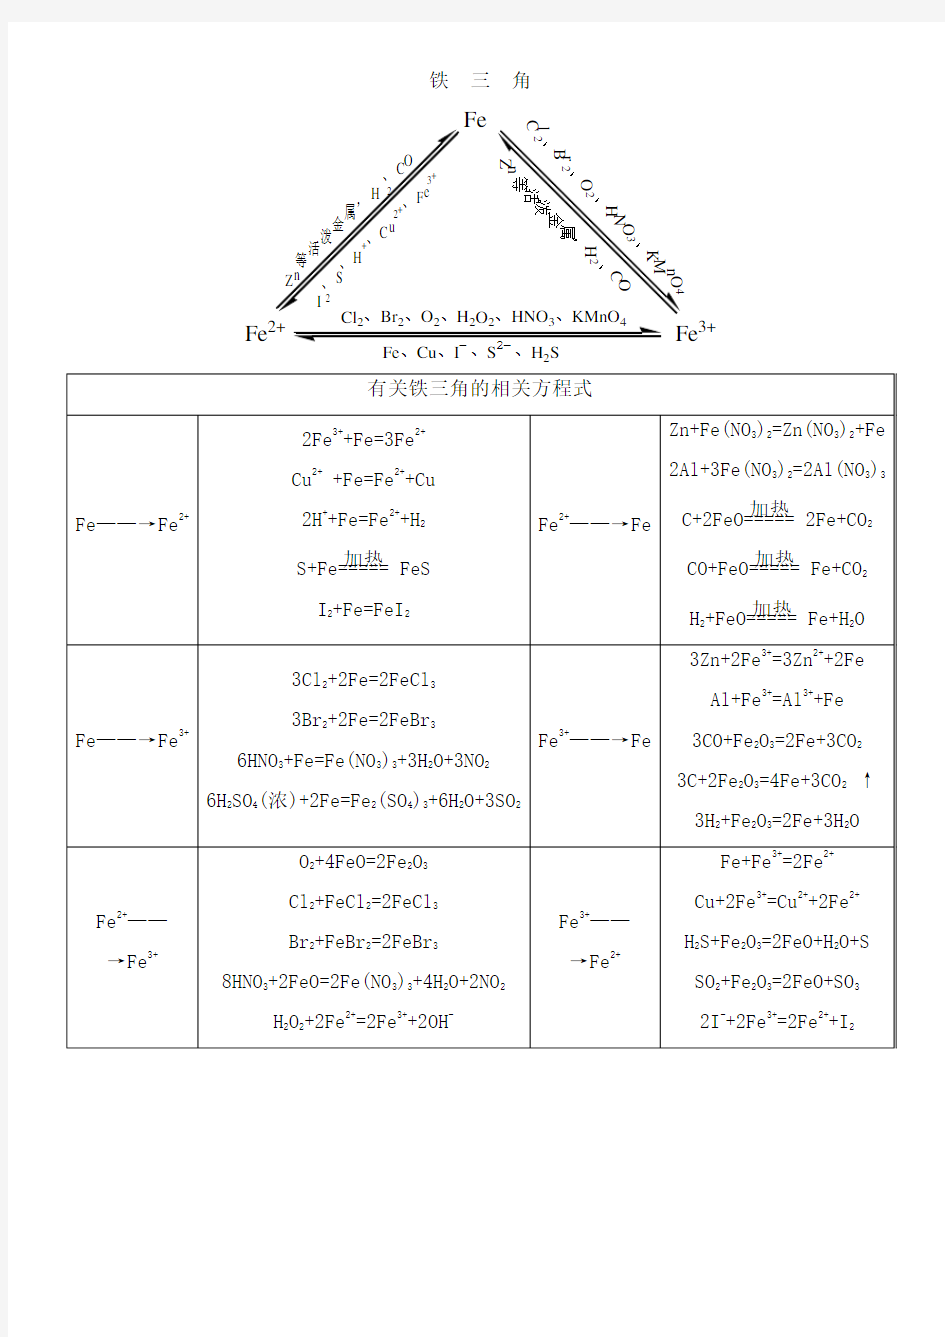 铝三角铁三角化学方程式总结